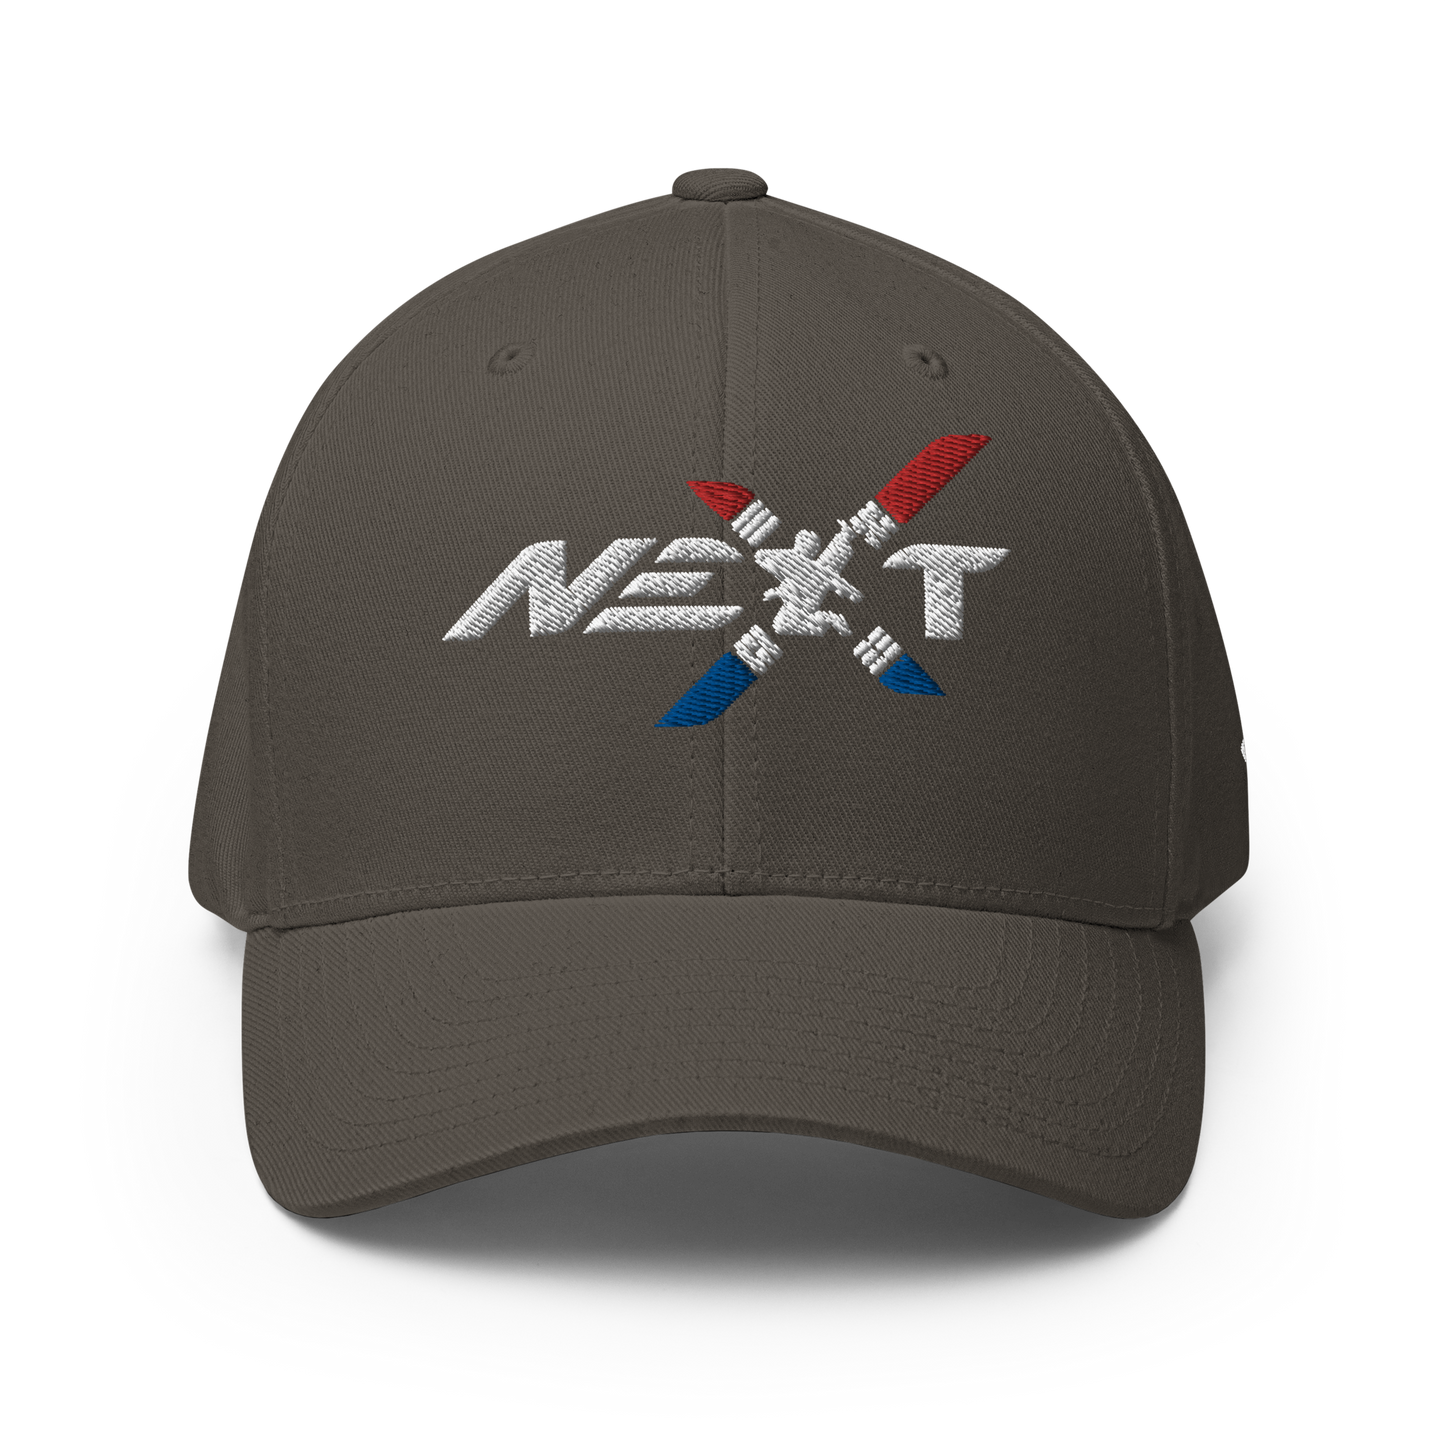 NEXT TAEKWONDO - FlexFit Cap